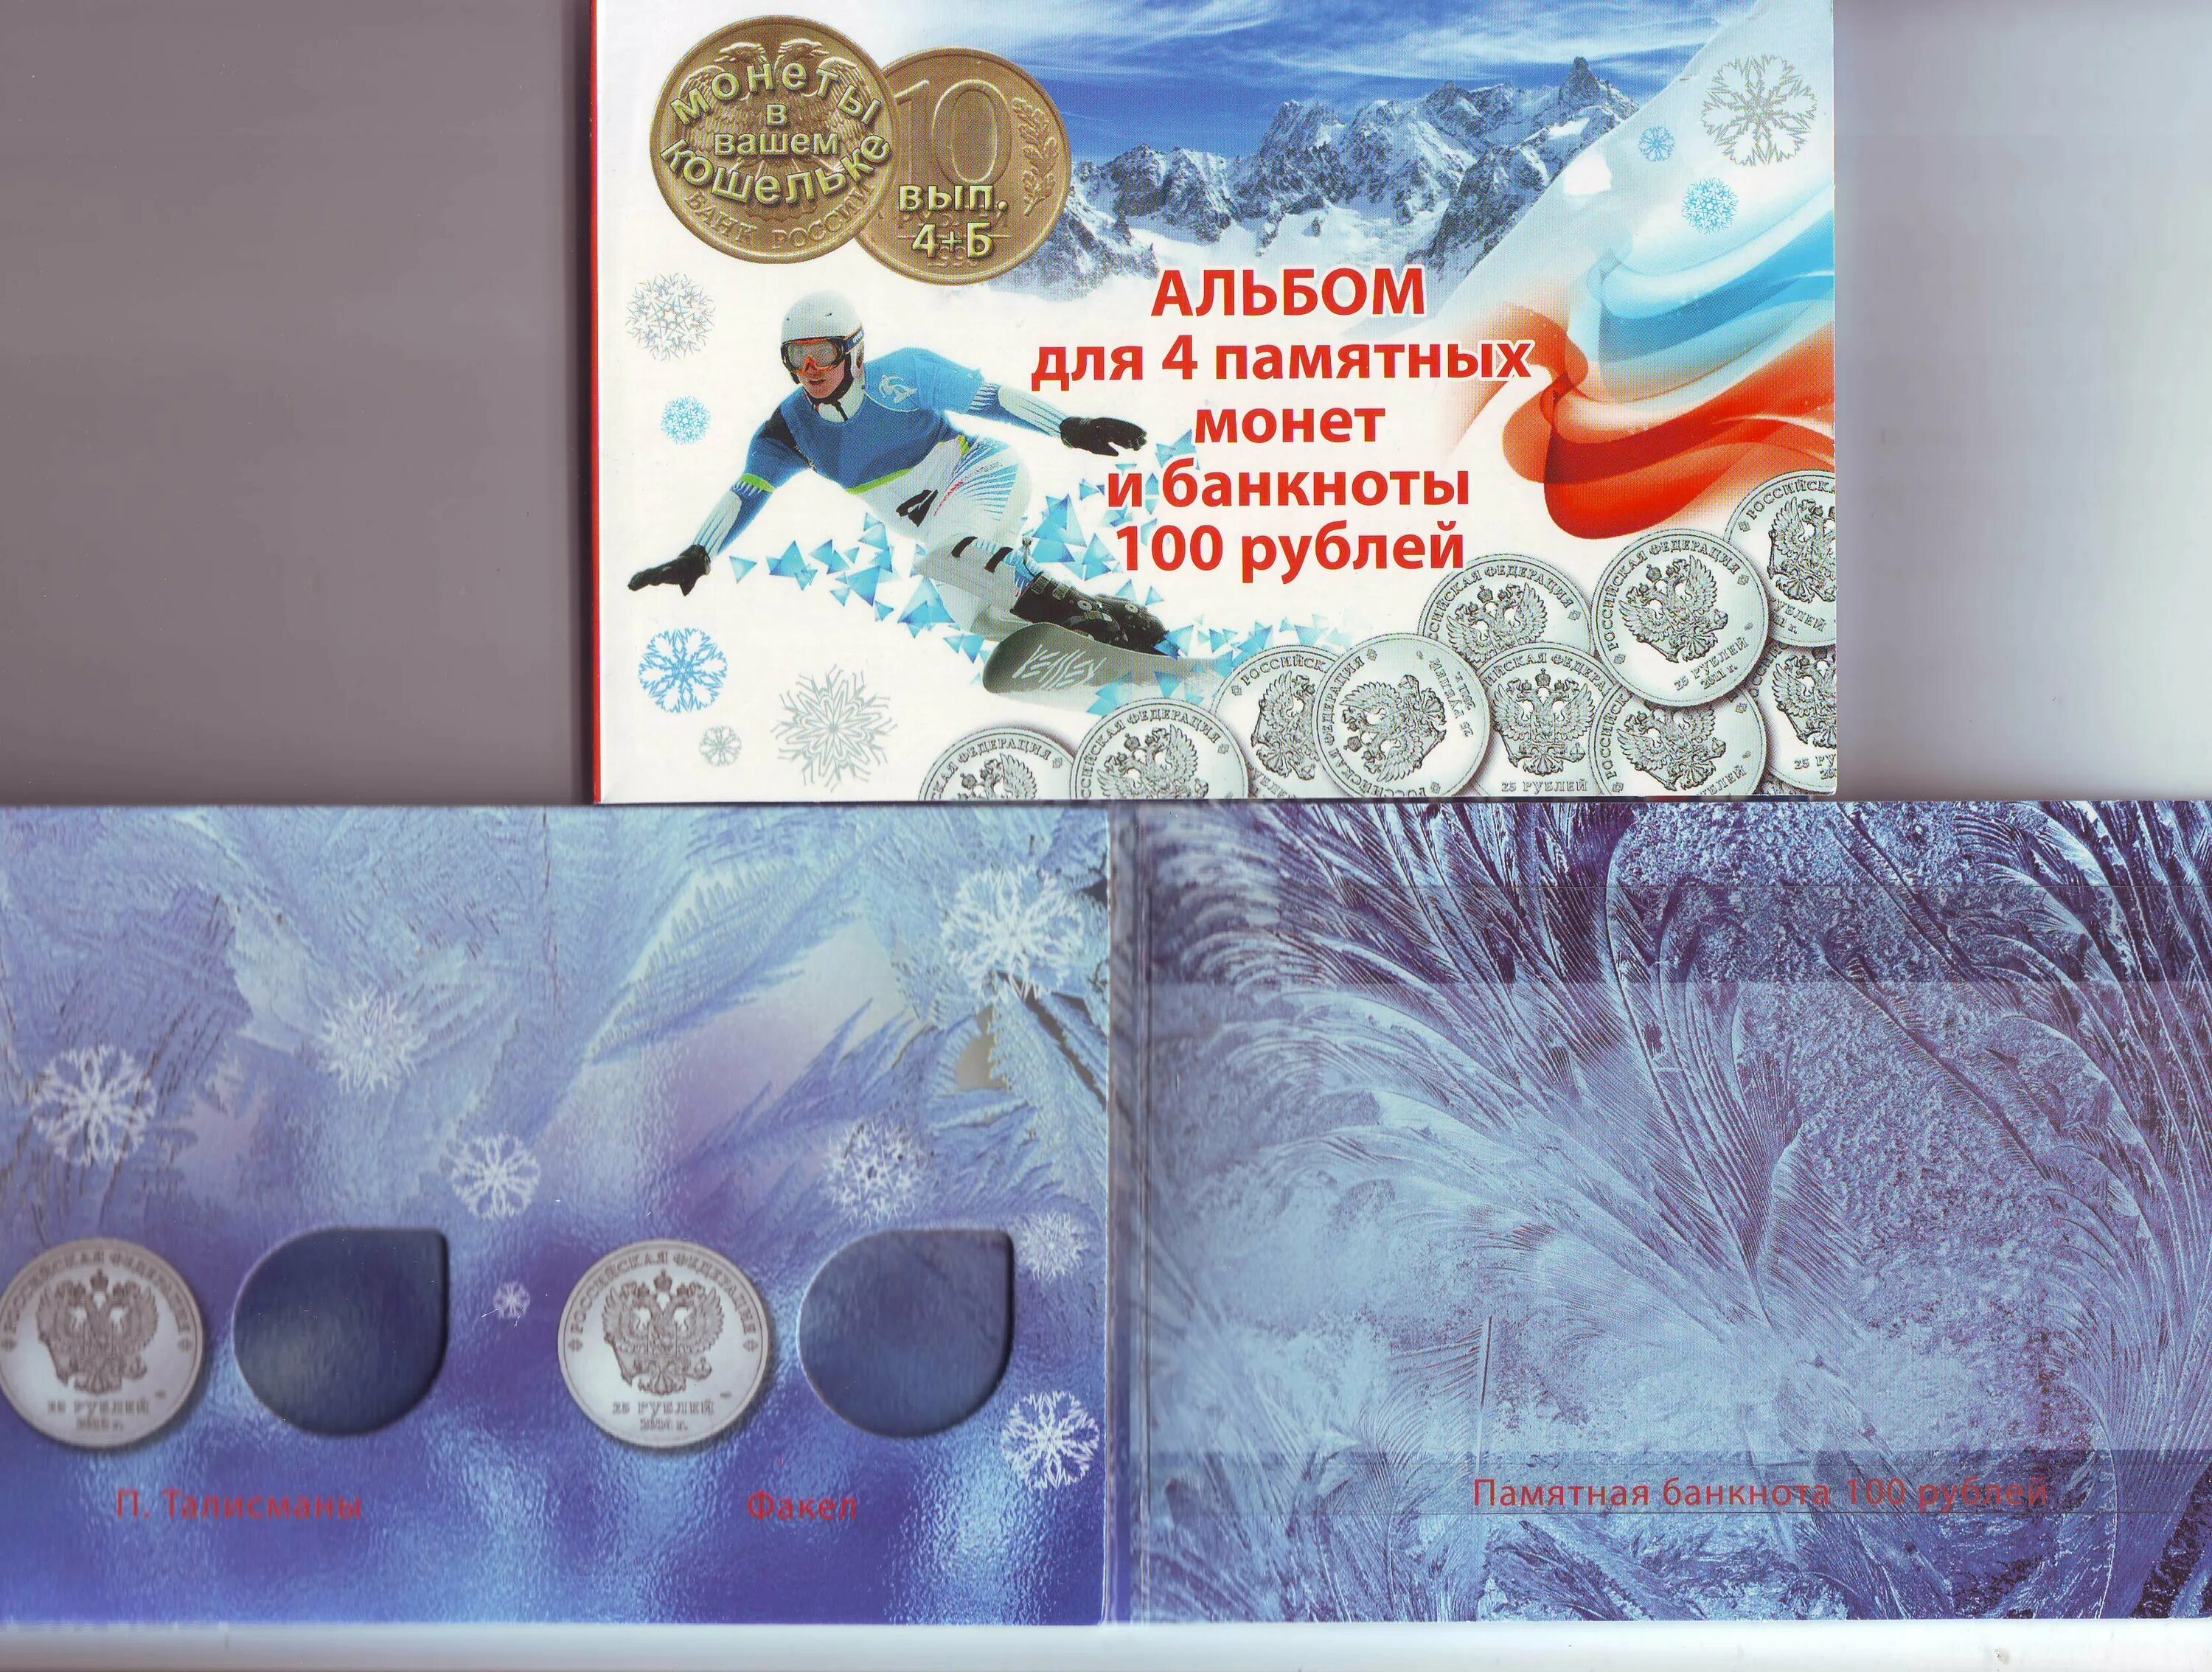 25 рублей олимпийские 2014 сочи